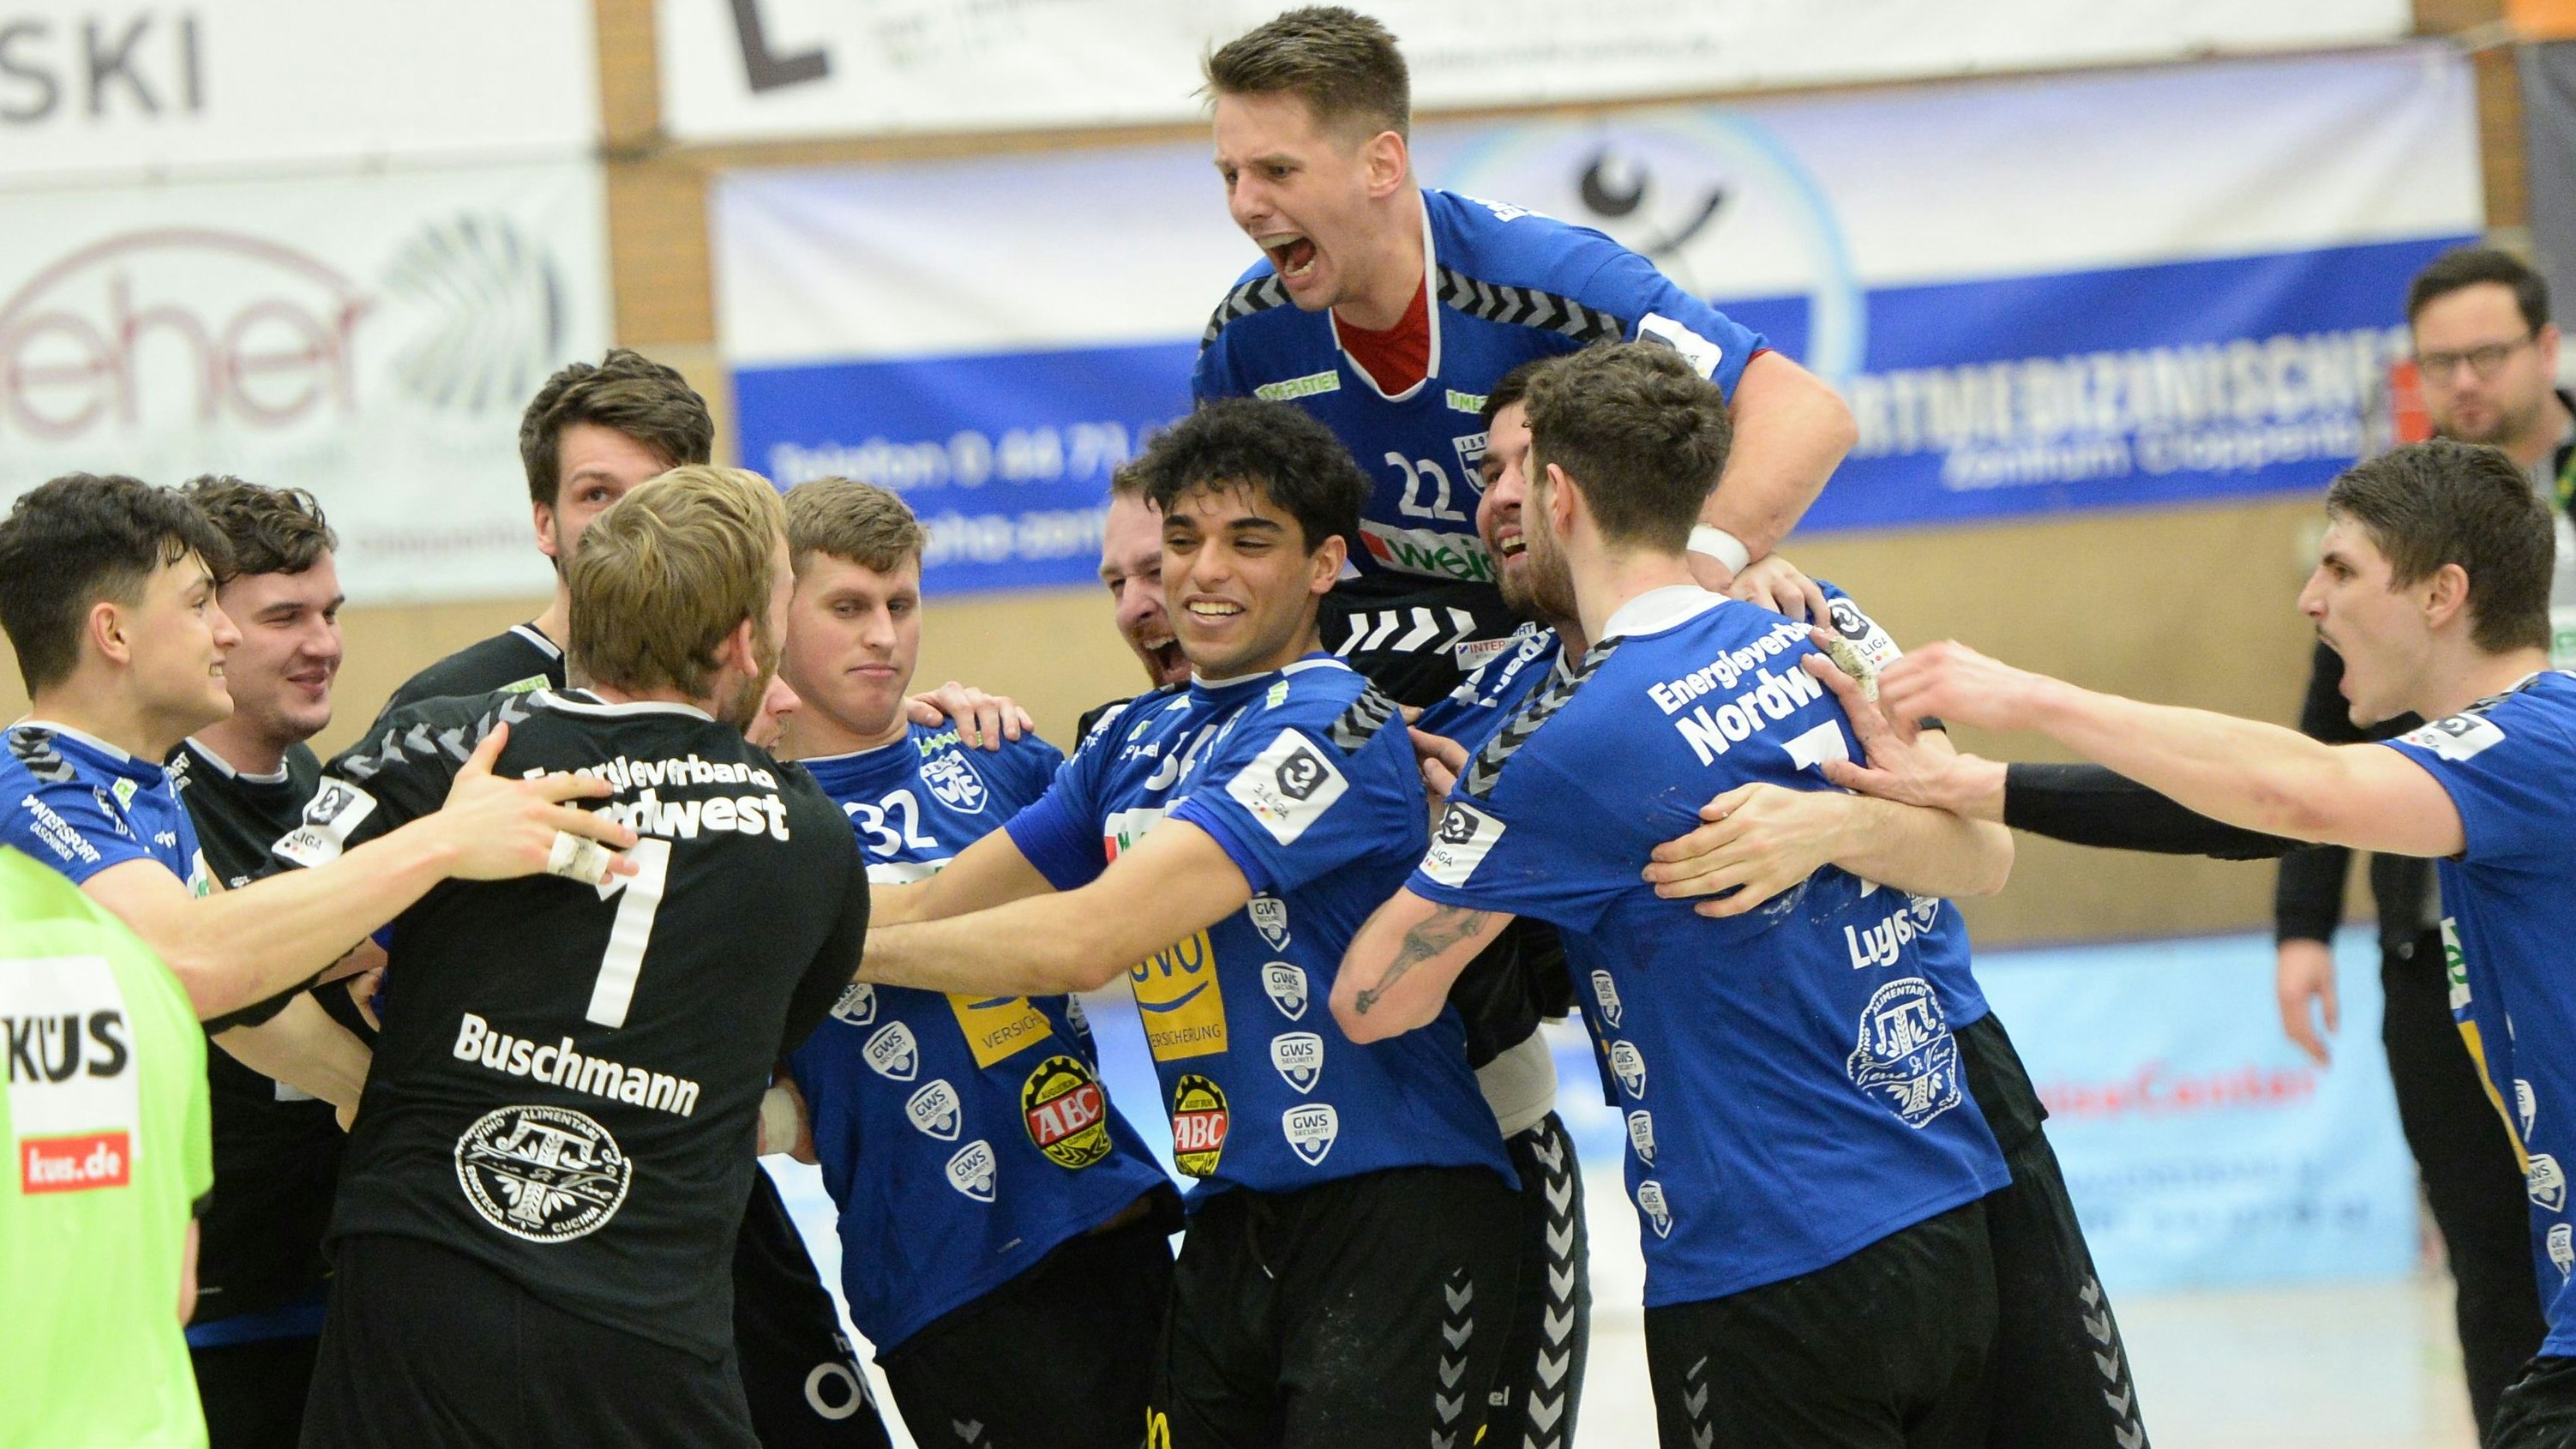 Riesenfreude bei den TVC-Handballern nach Punktgewinn gegen Ahlen. Die Partie endete 36:36. Foto: Langosch